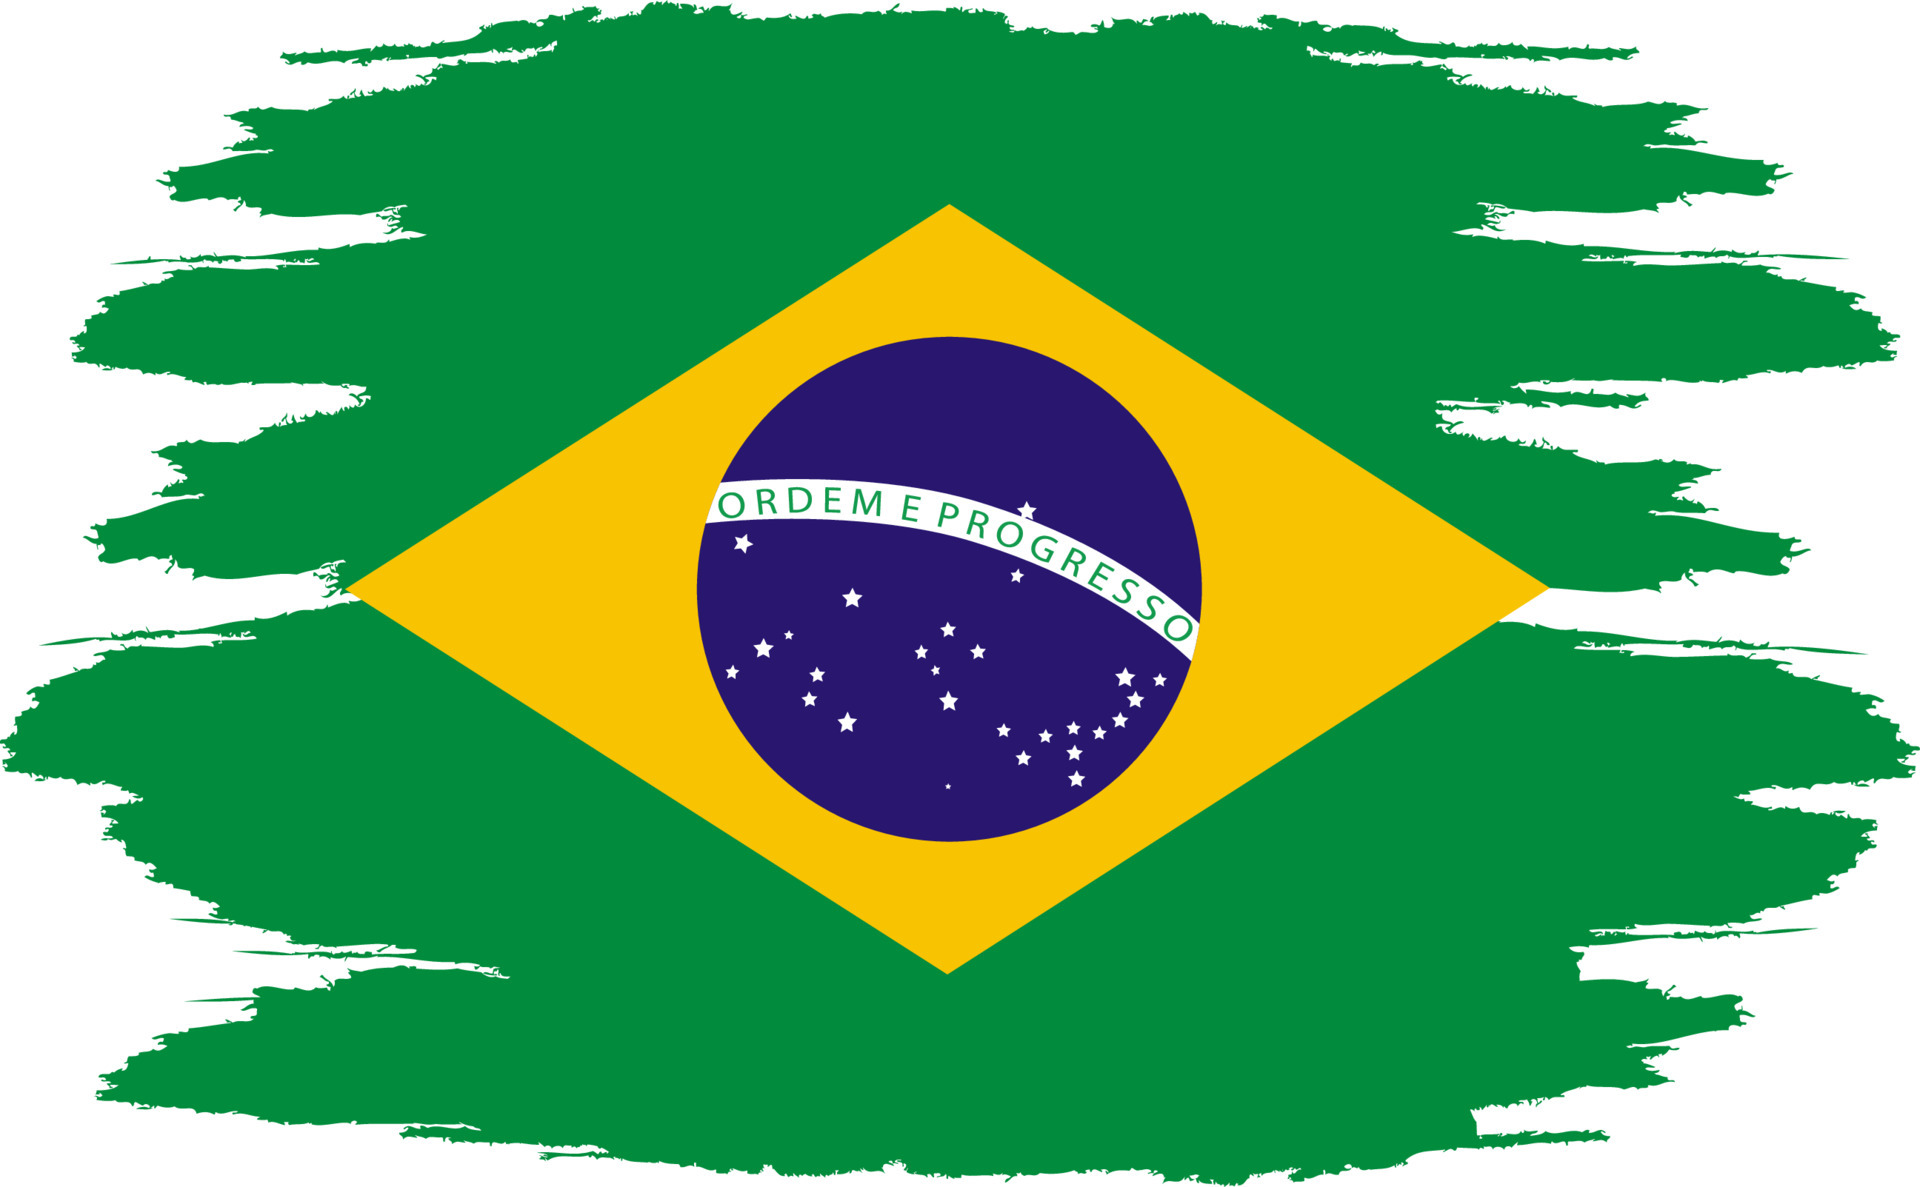 Cuál es la bandera de brasil